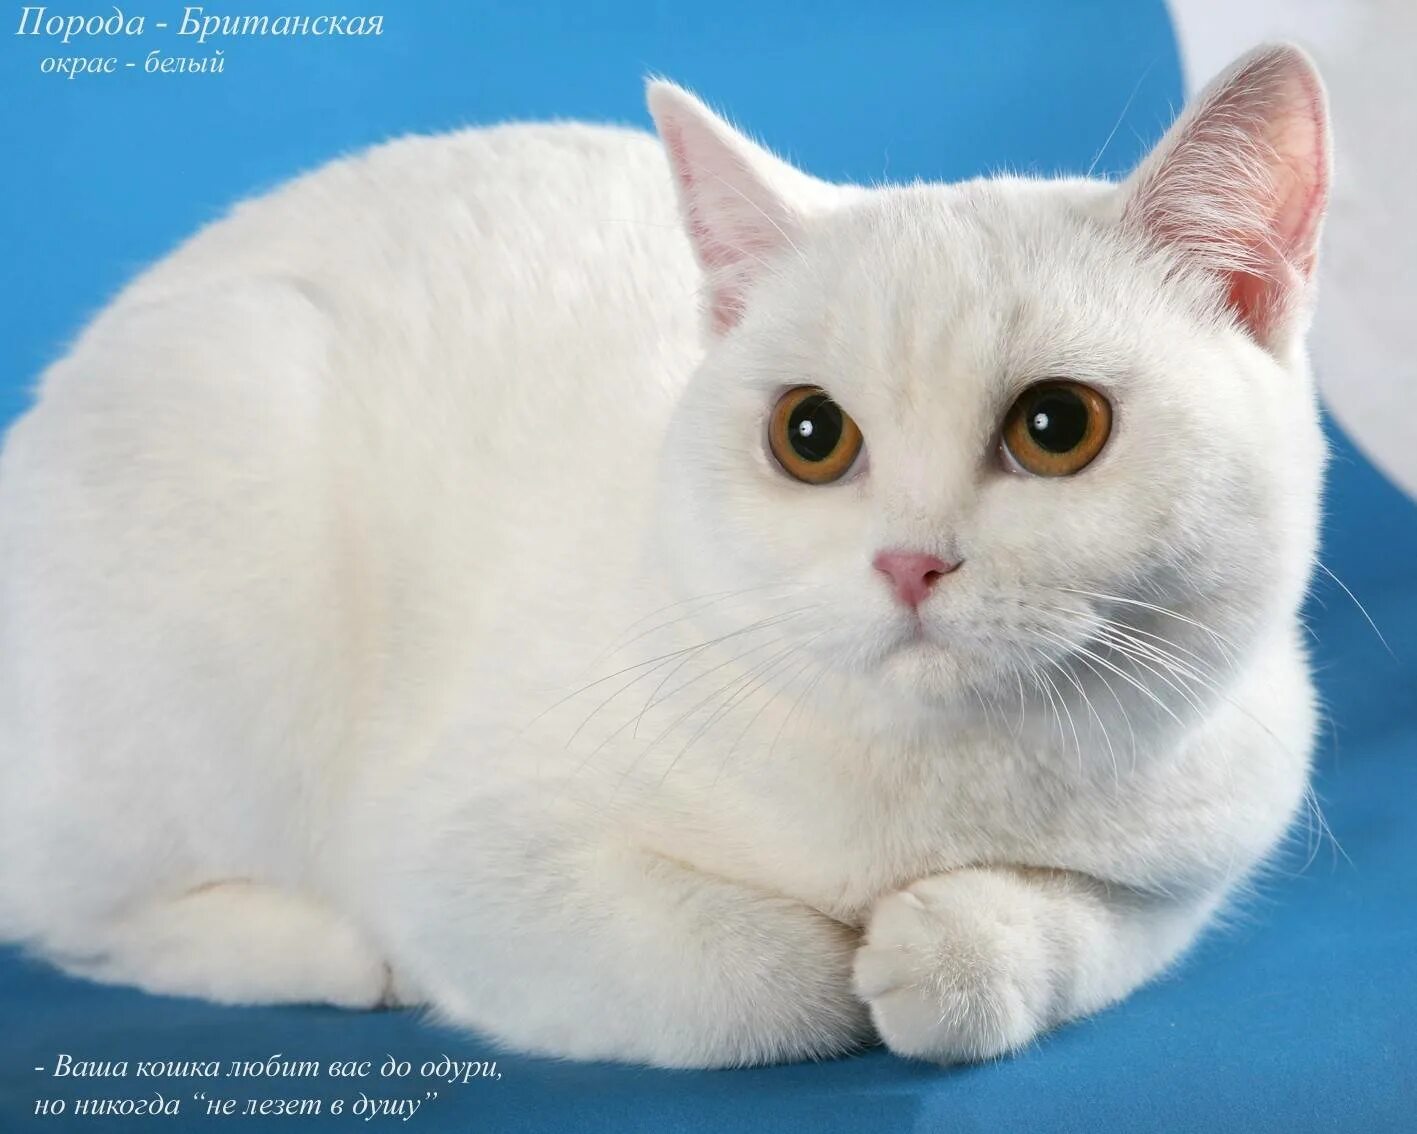 Найти породу кошки. Британка белая порода кошек. Британская гладкошерстная кошка белая. Чисто белая Британская кошка гладкошерстная. Британец альбинос.